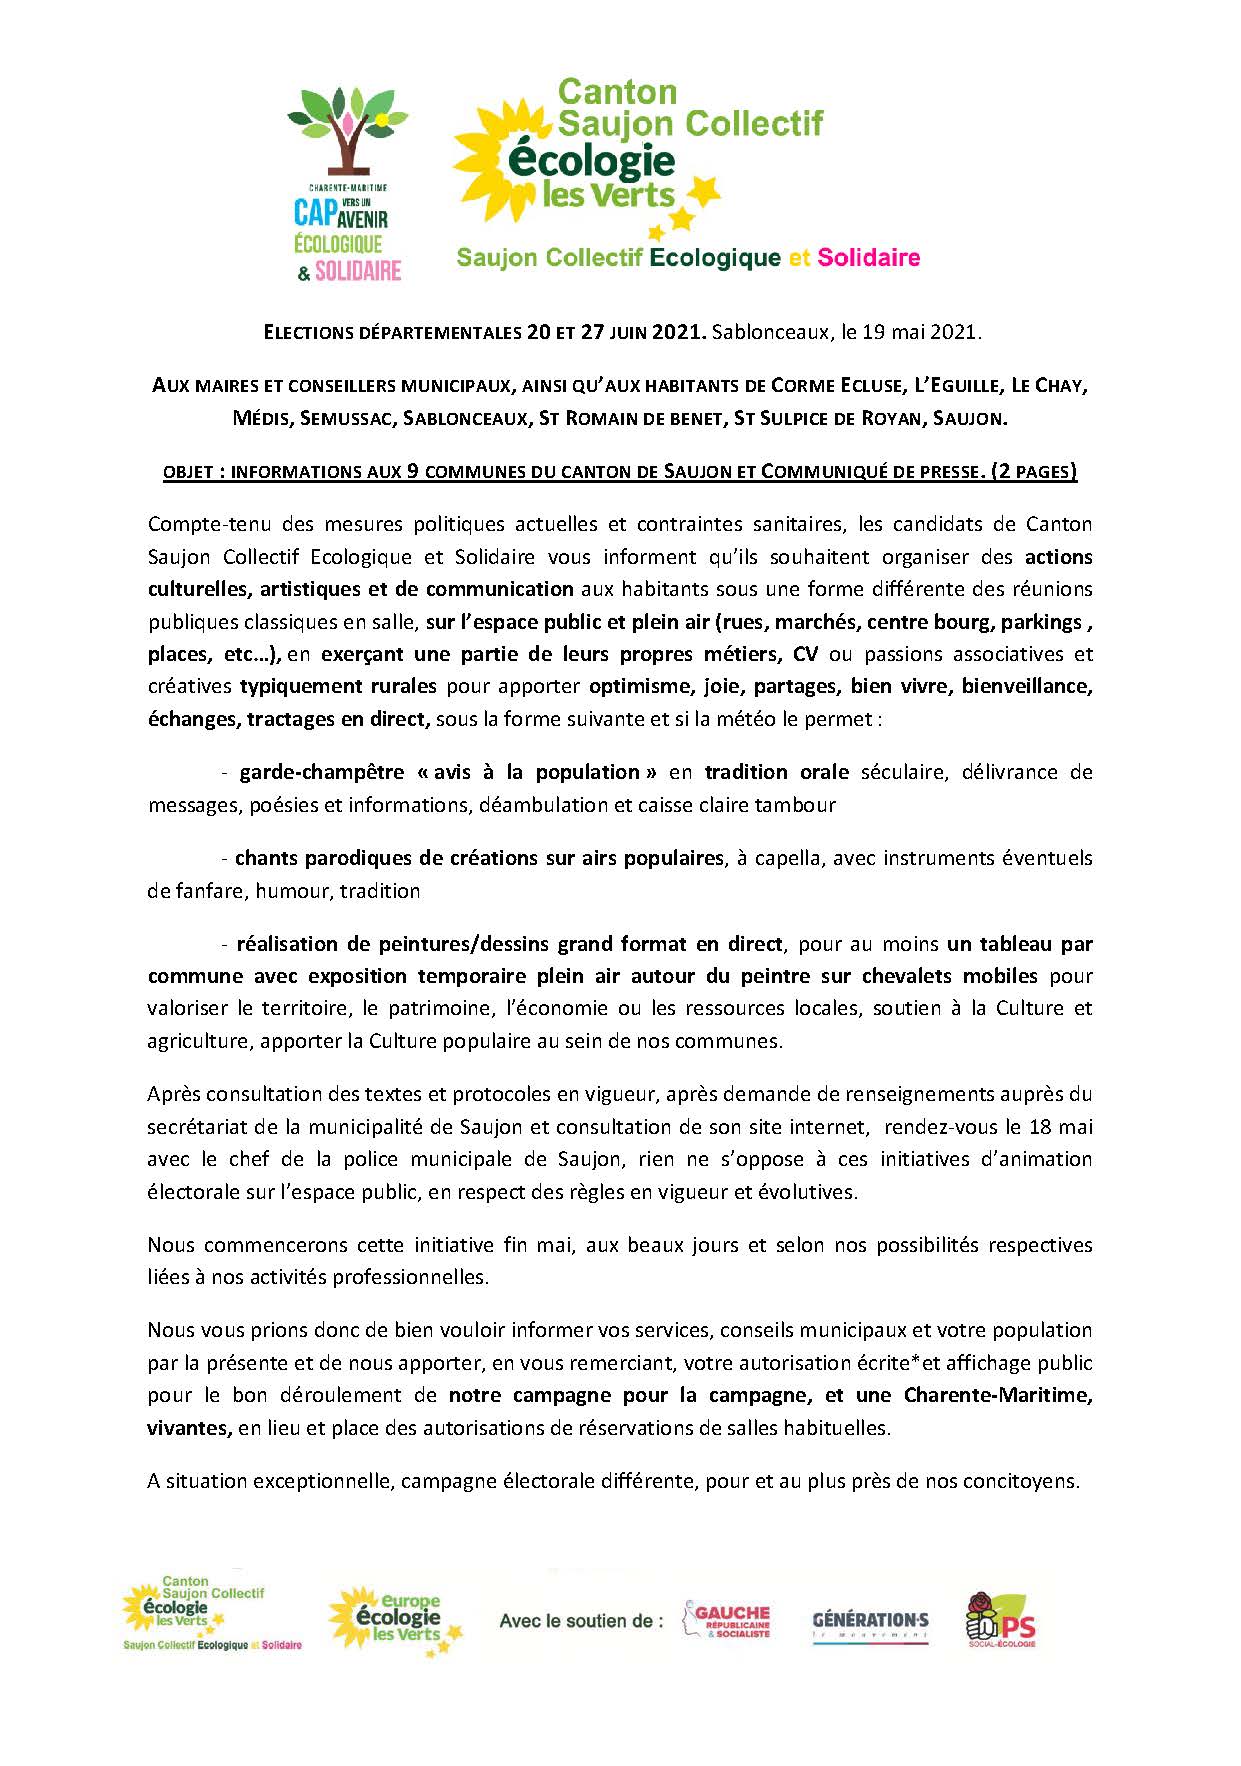 Communiqué de presse et information aux communes du canton du 19 mai 2021_Page_1